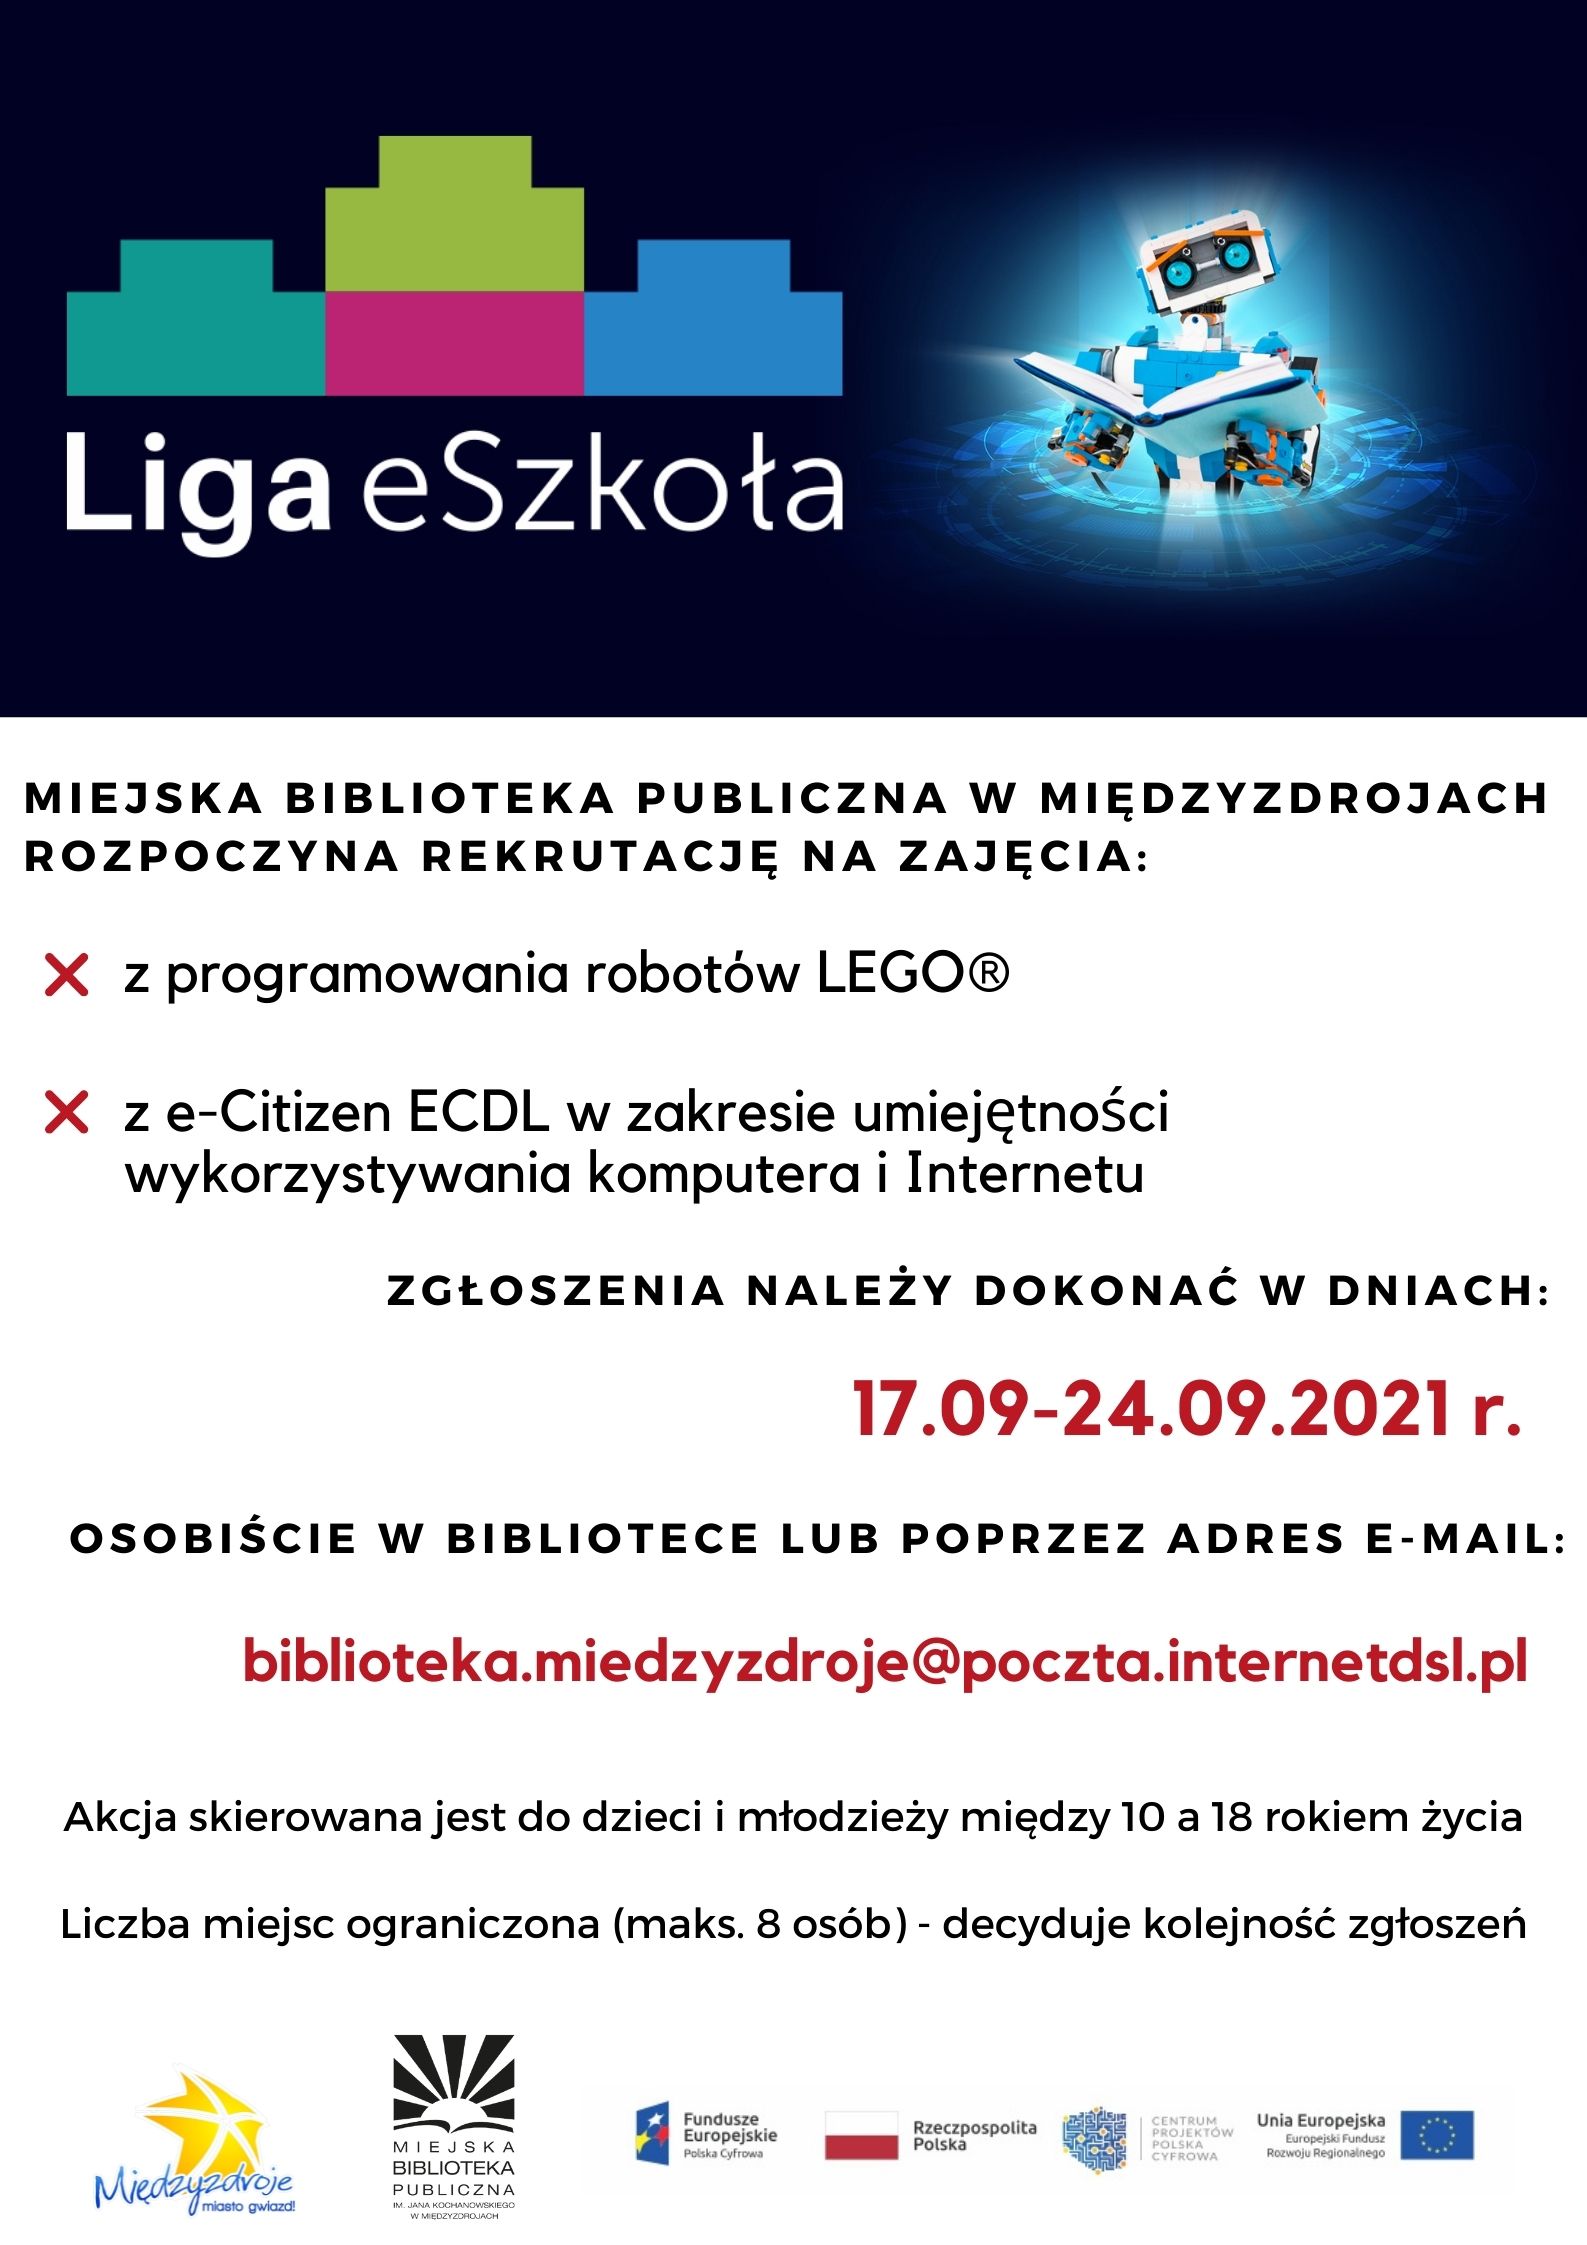 Rekrutacja na zajęcia z ECDL i Lego Spike w ramach programu Liga eSzkoła 17-24 września 2021 r. - zapowiedź